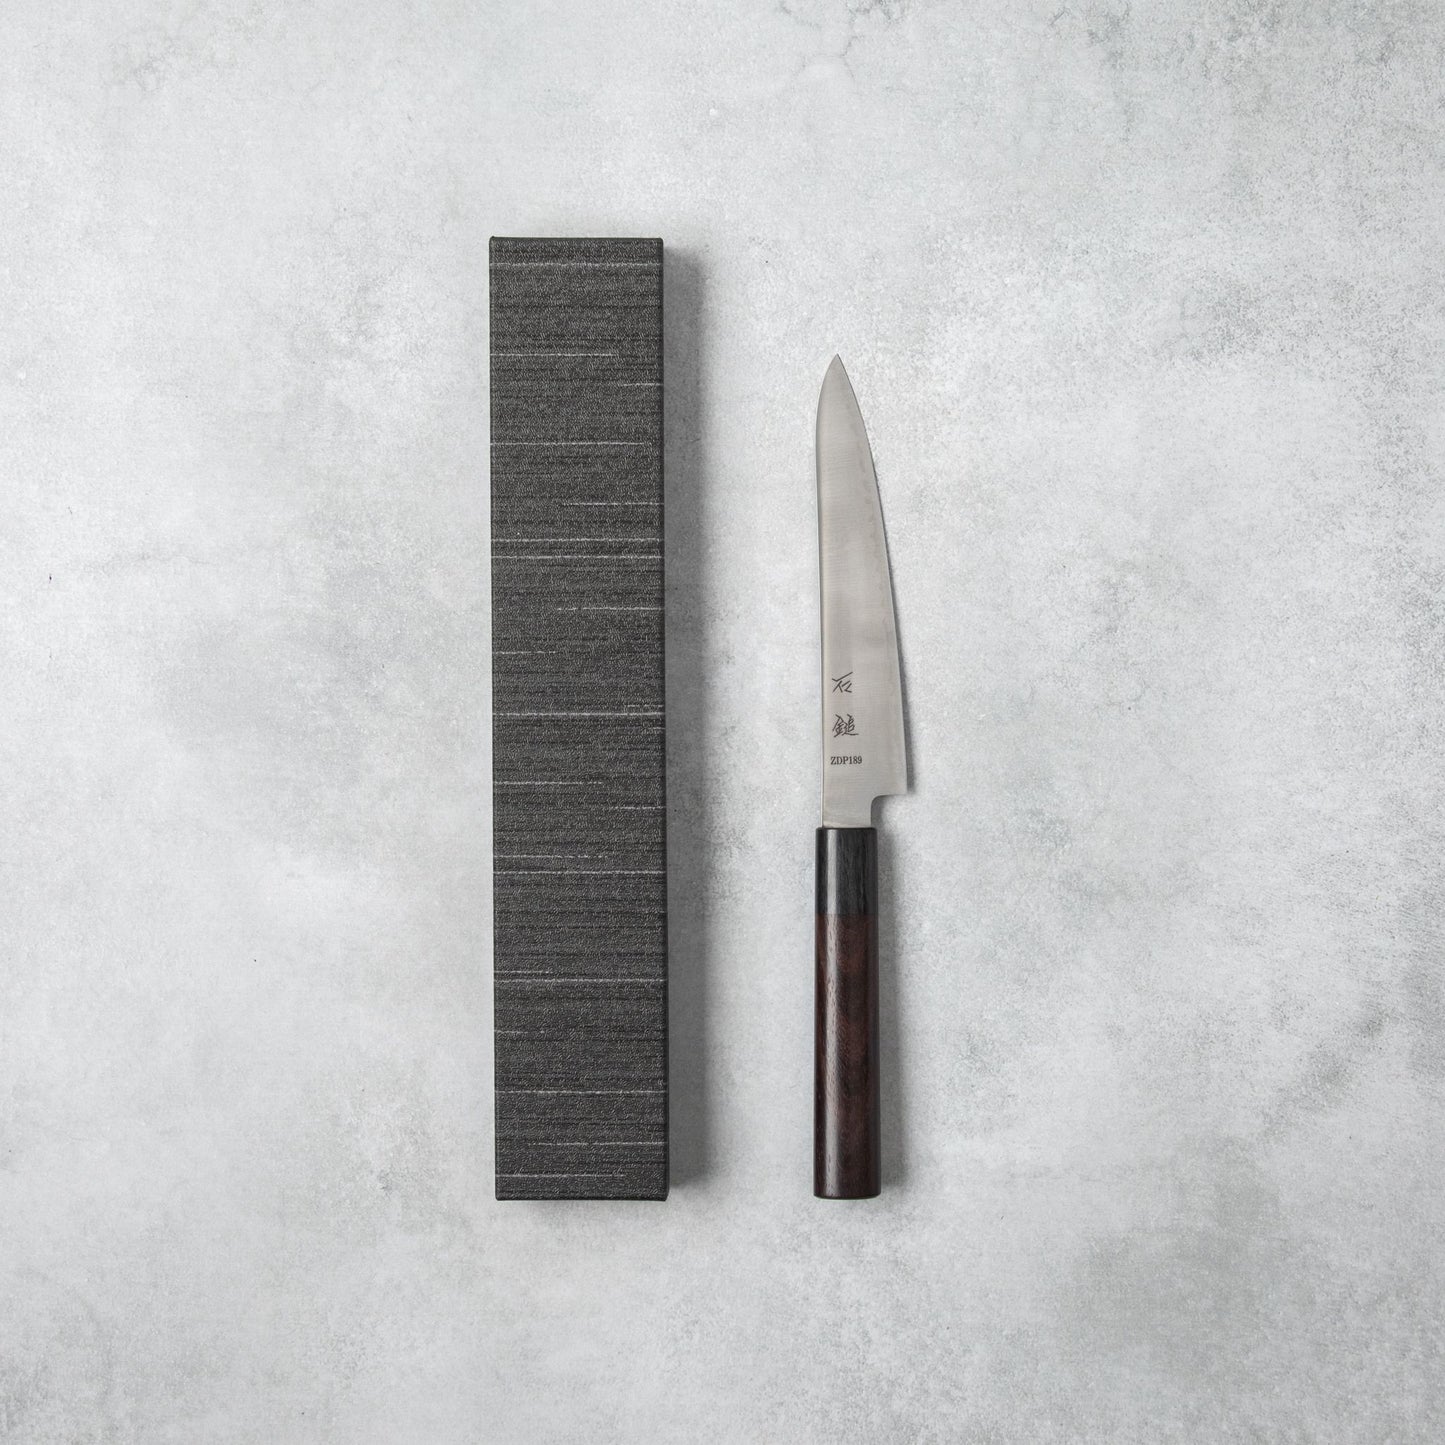 Ishizuchi ZDP189 Petty Knife